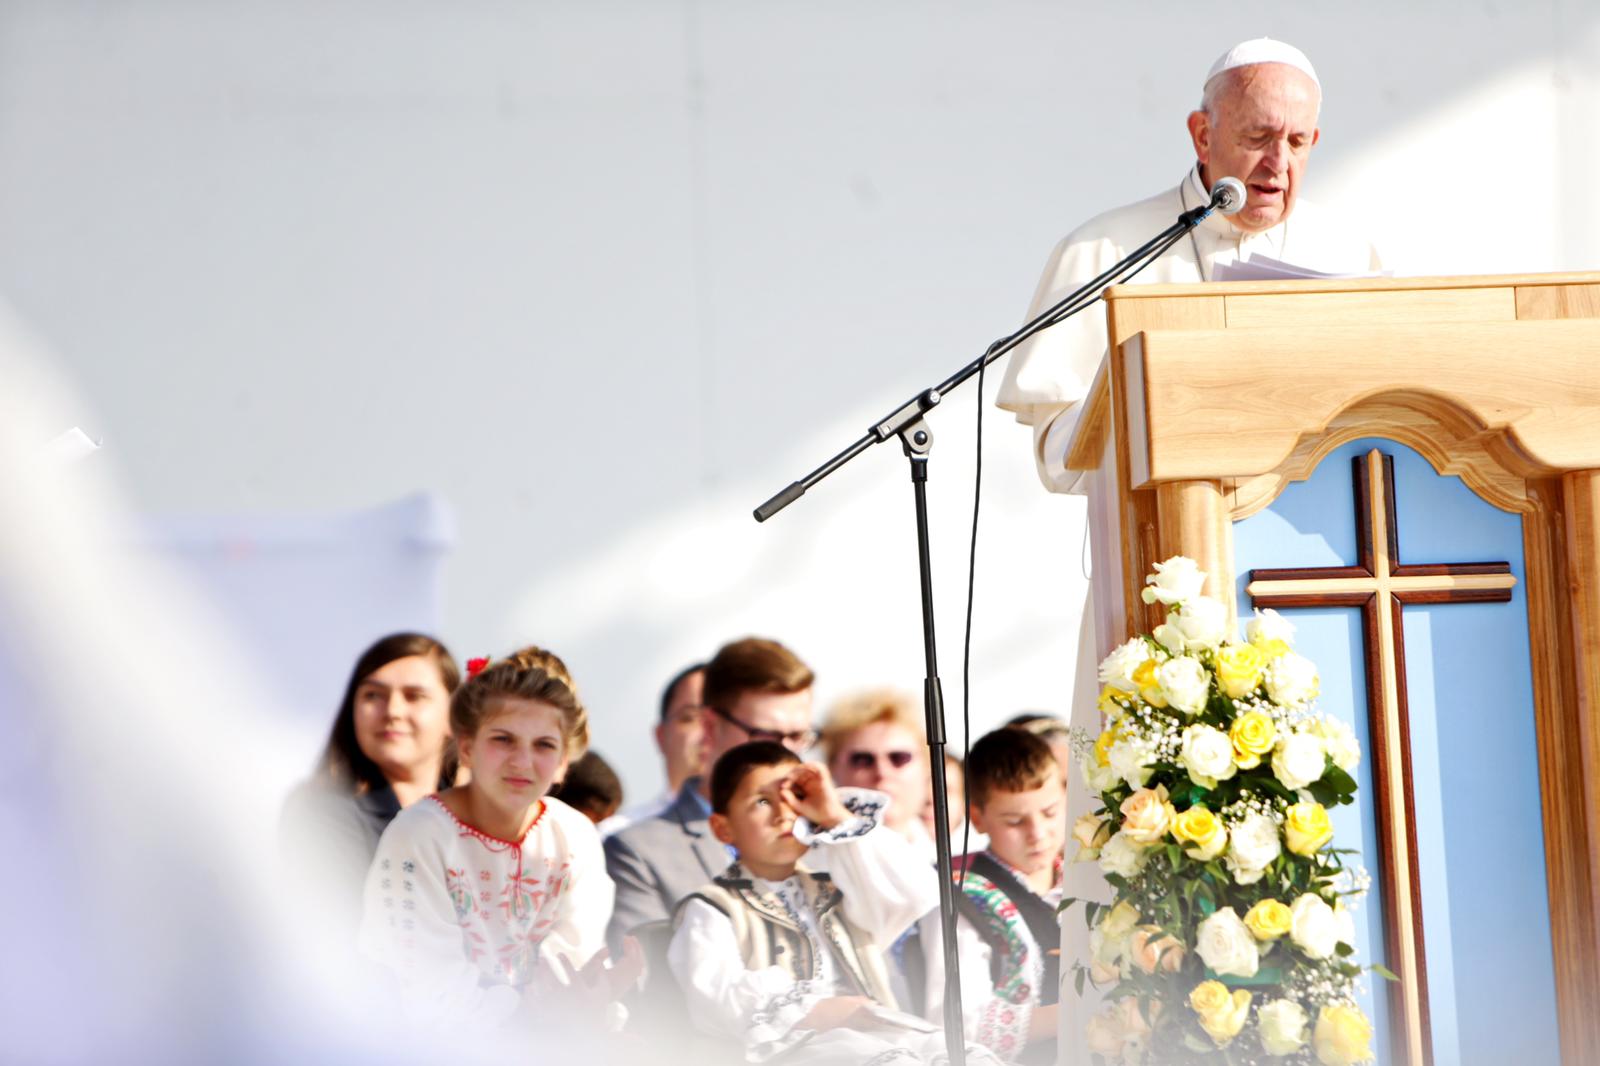 A apărut poza cu femeia la care a dat like Papa! Vaticanul a pornit o super-anchetă